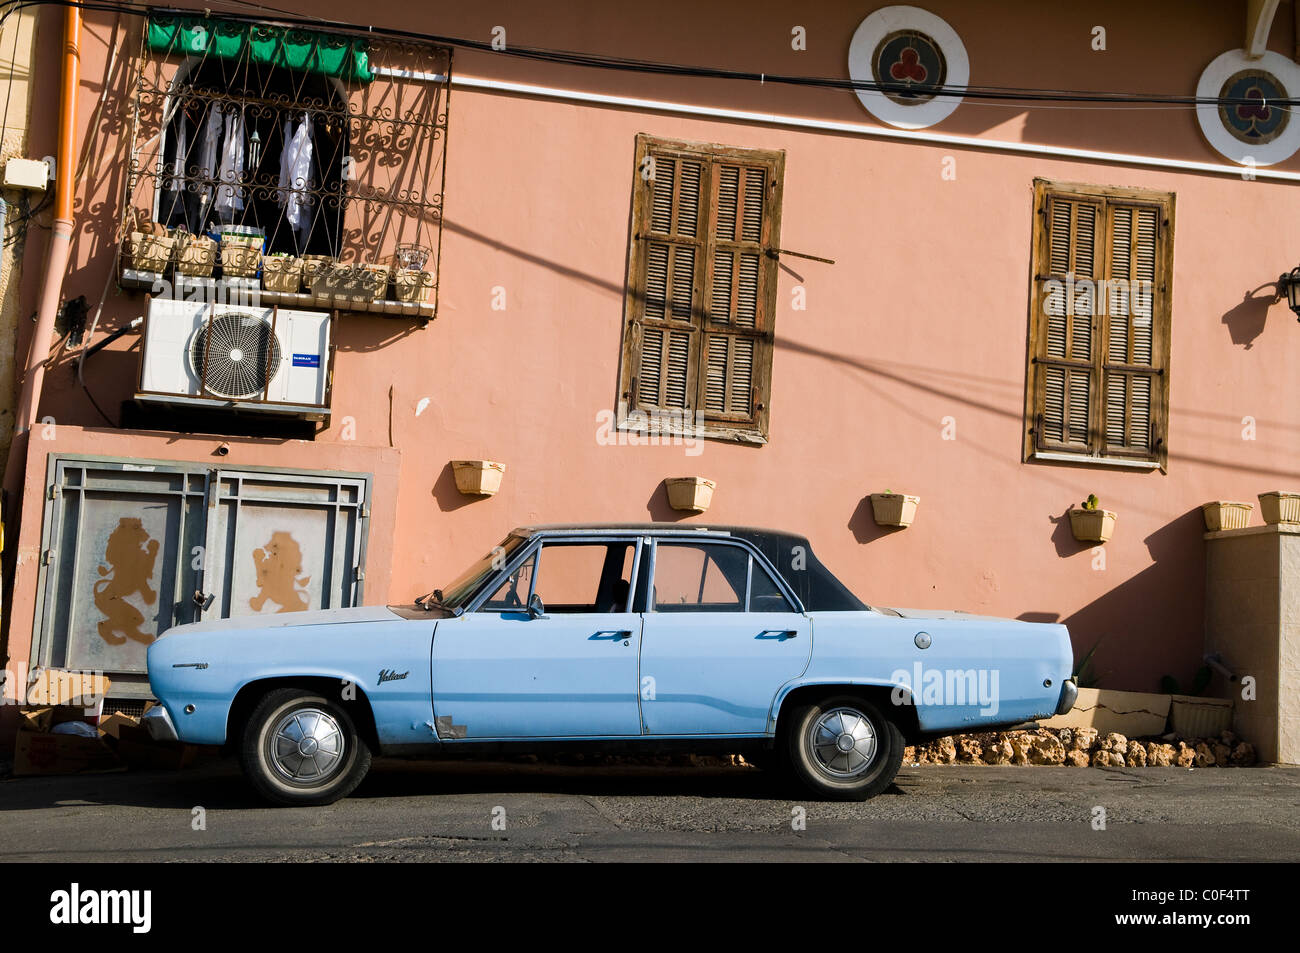 Una bellissima Plymouth Valiant auto nella città vecchia di Jaffa, Israele. Foto Stock